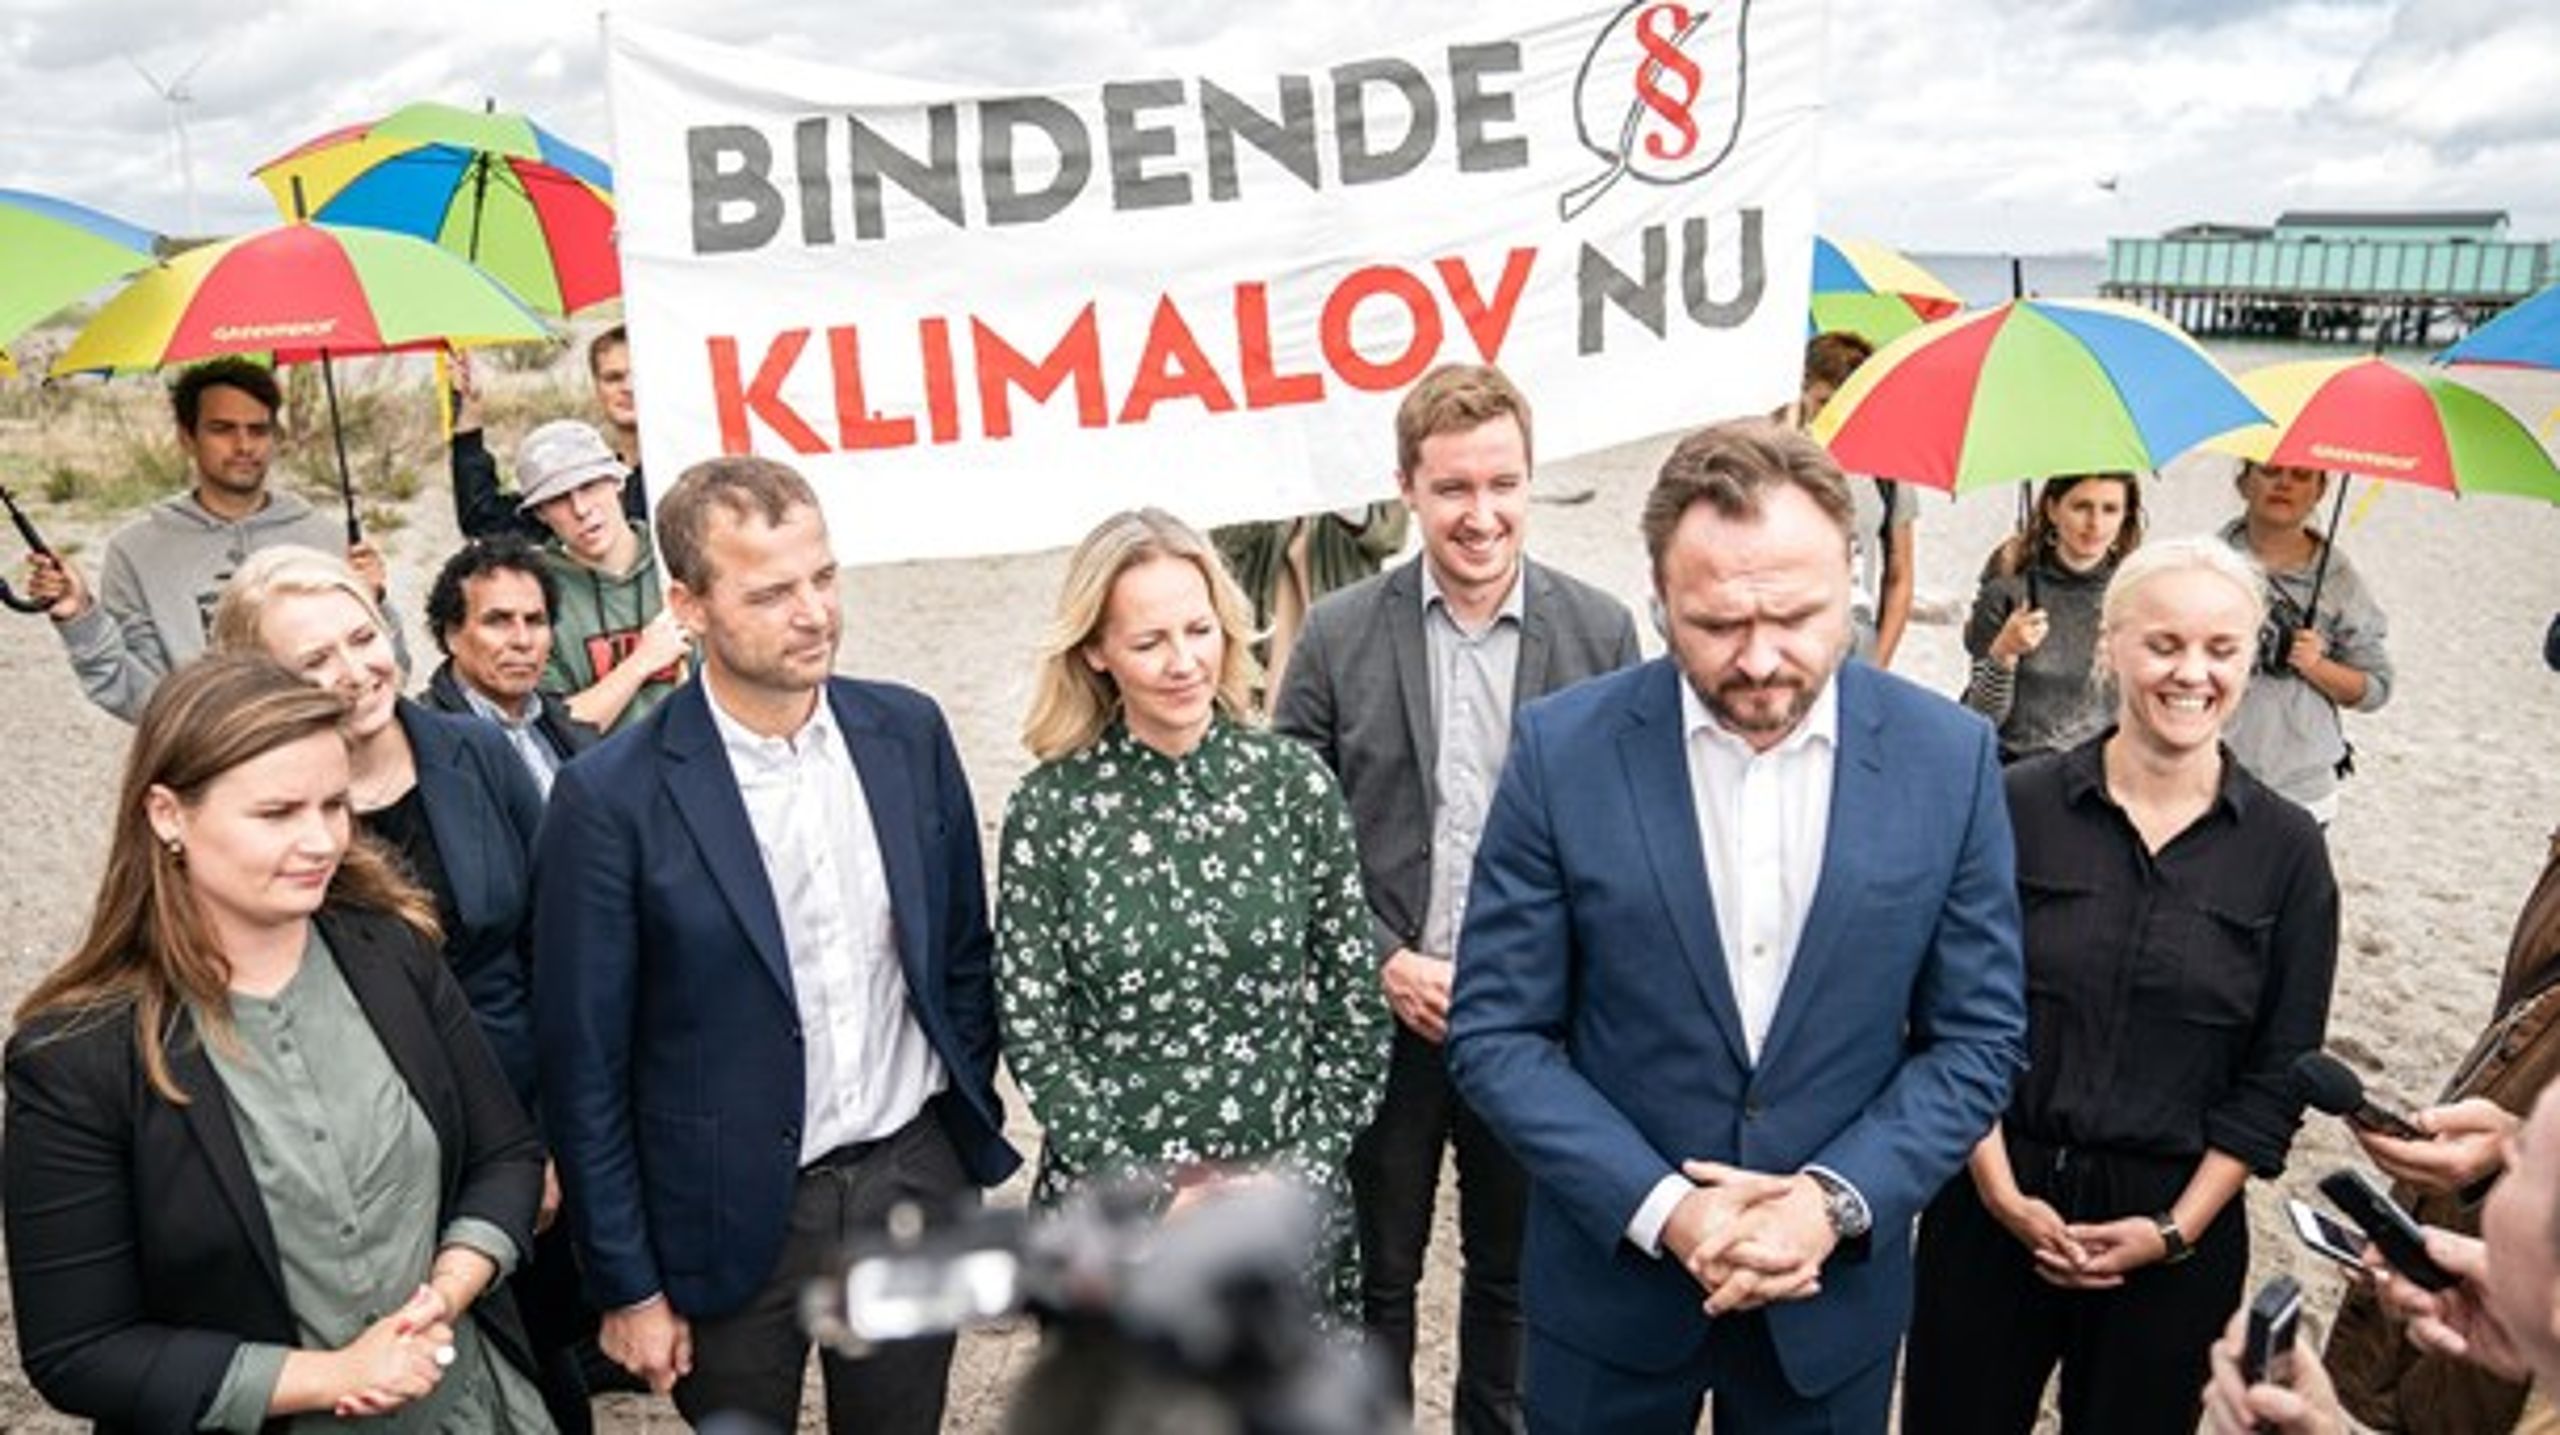 Det er i dag ni uger&nbsp;siden, at&nbsp;regeringen og dens støttepartier mødtes på Naturcenter Amager Strand til det første sættemøde om klimaloven. I sidste uge begyndte de reelle forhandlinger.&nbsp;